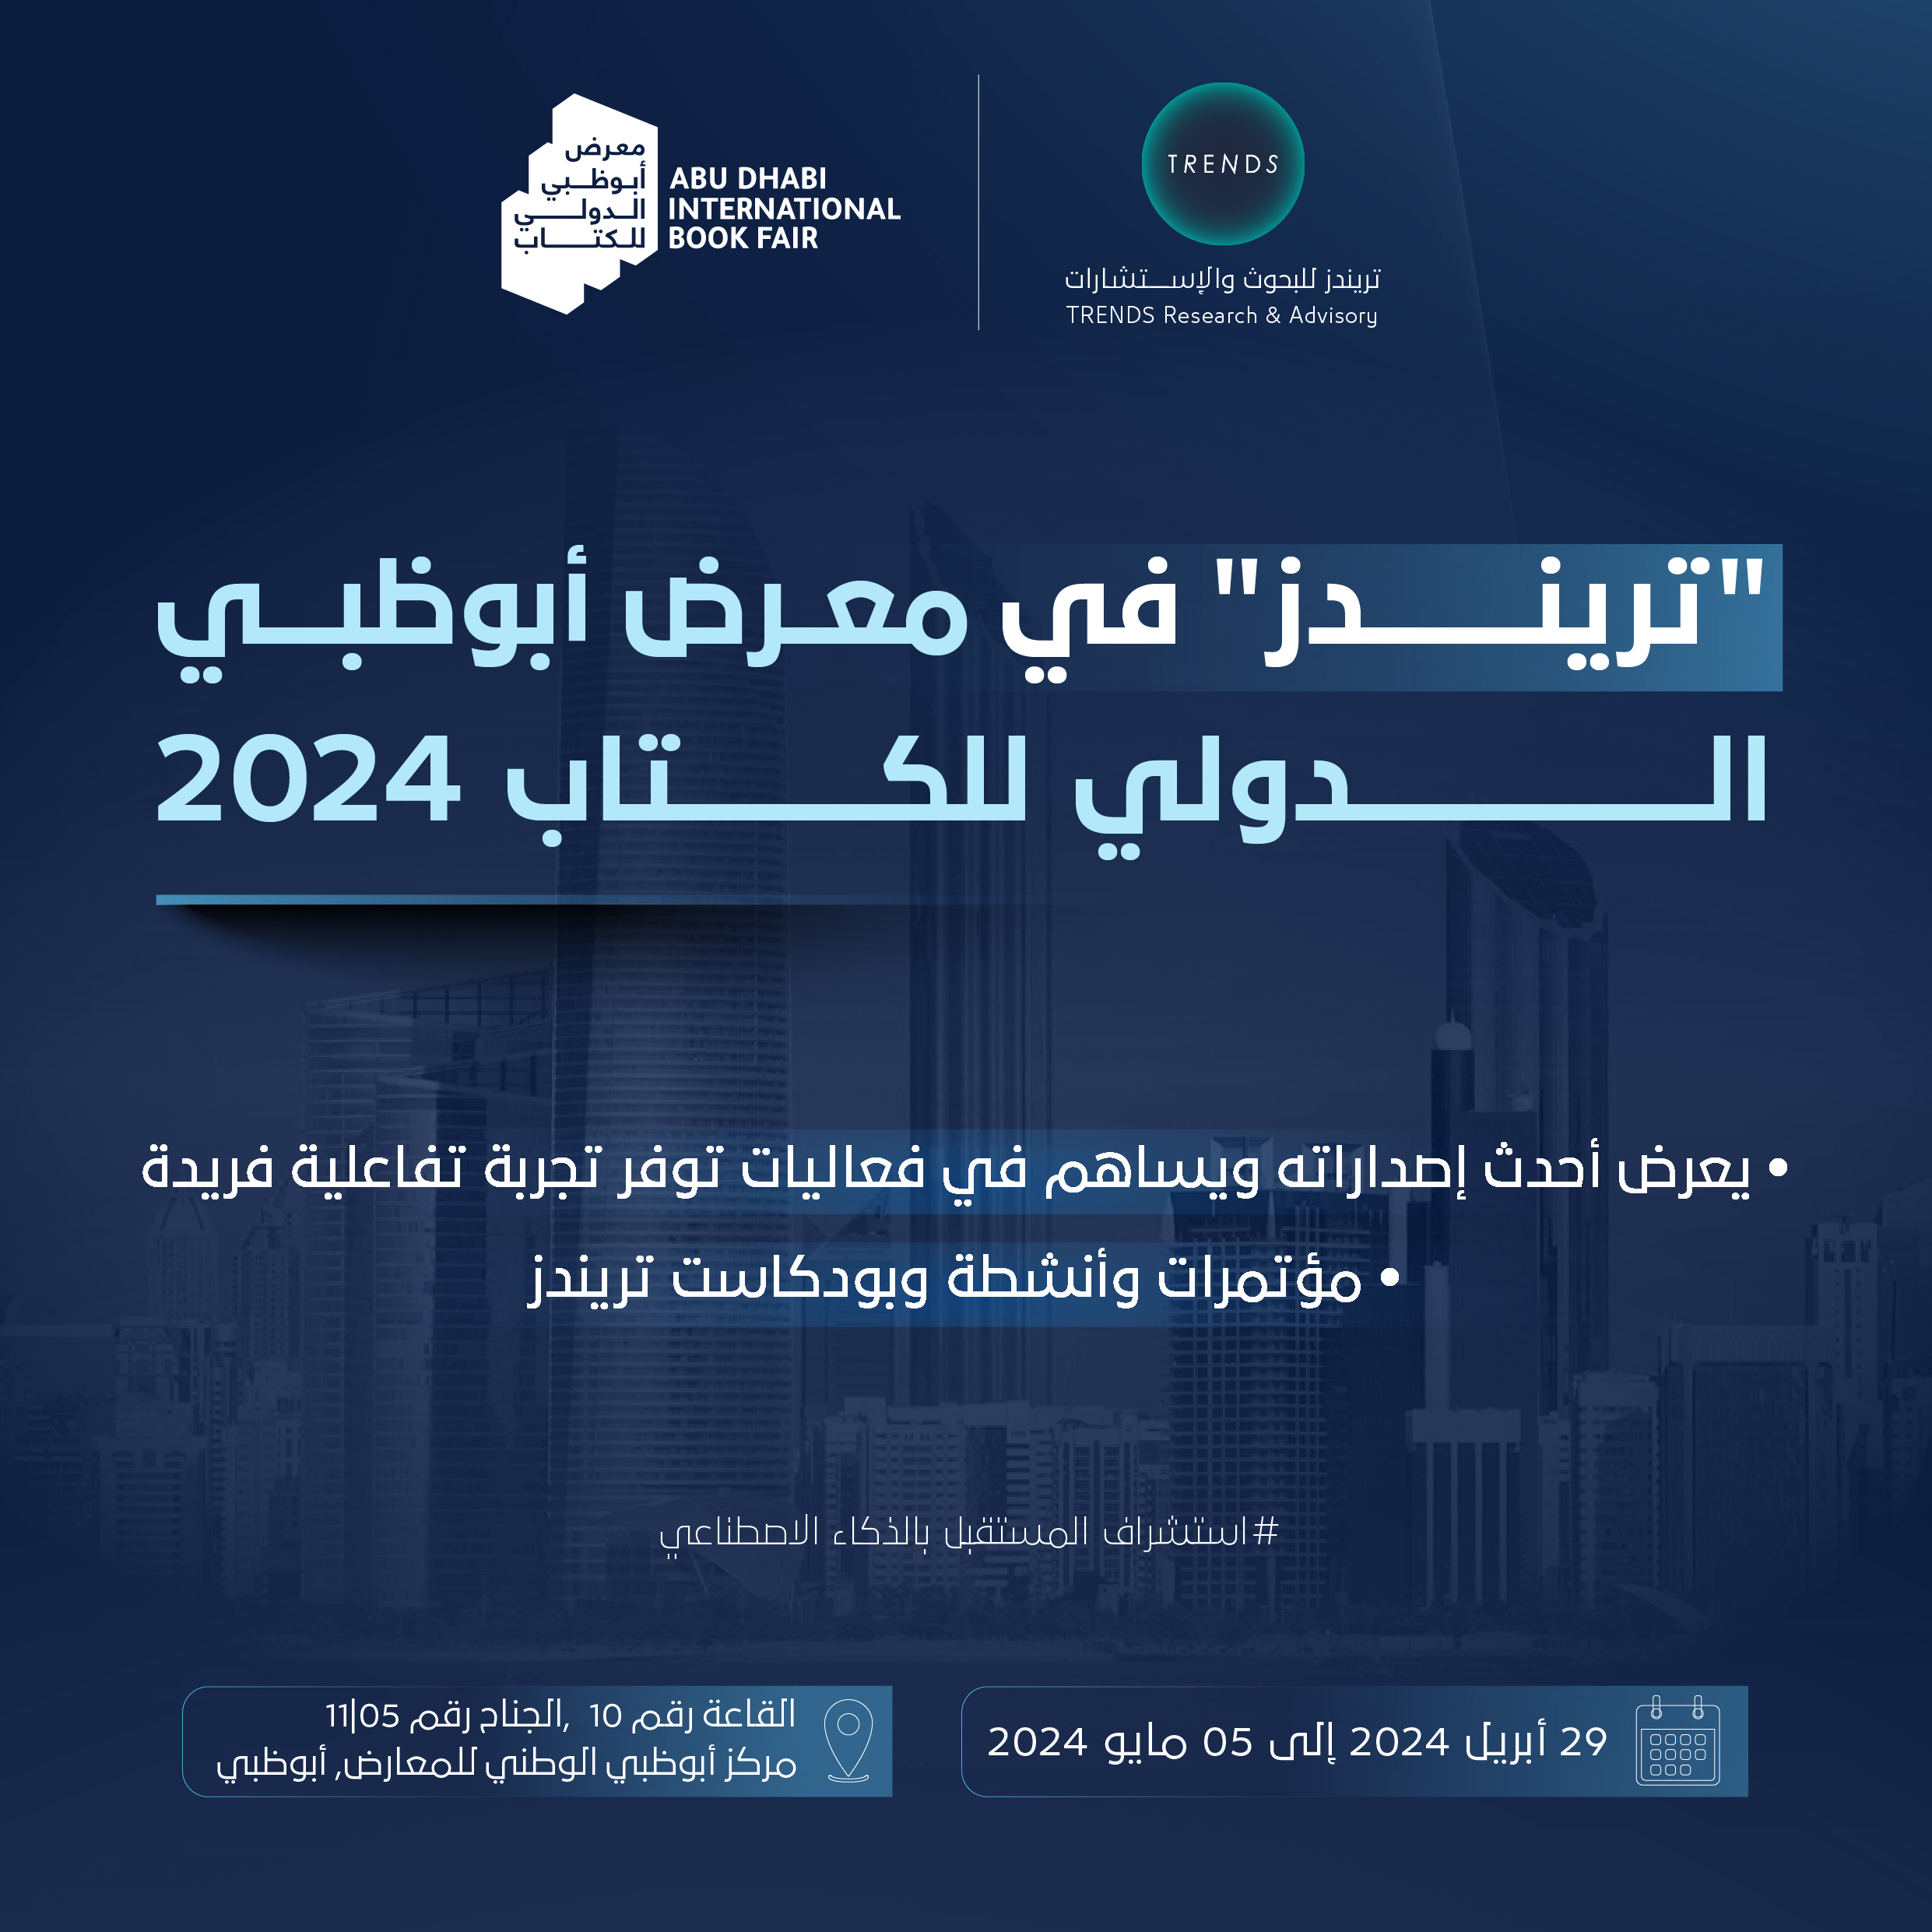 تريندز يشارك بفاعلية في الدورة الـ33 من "أبوظبي الدولي للكتاب" 2024